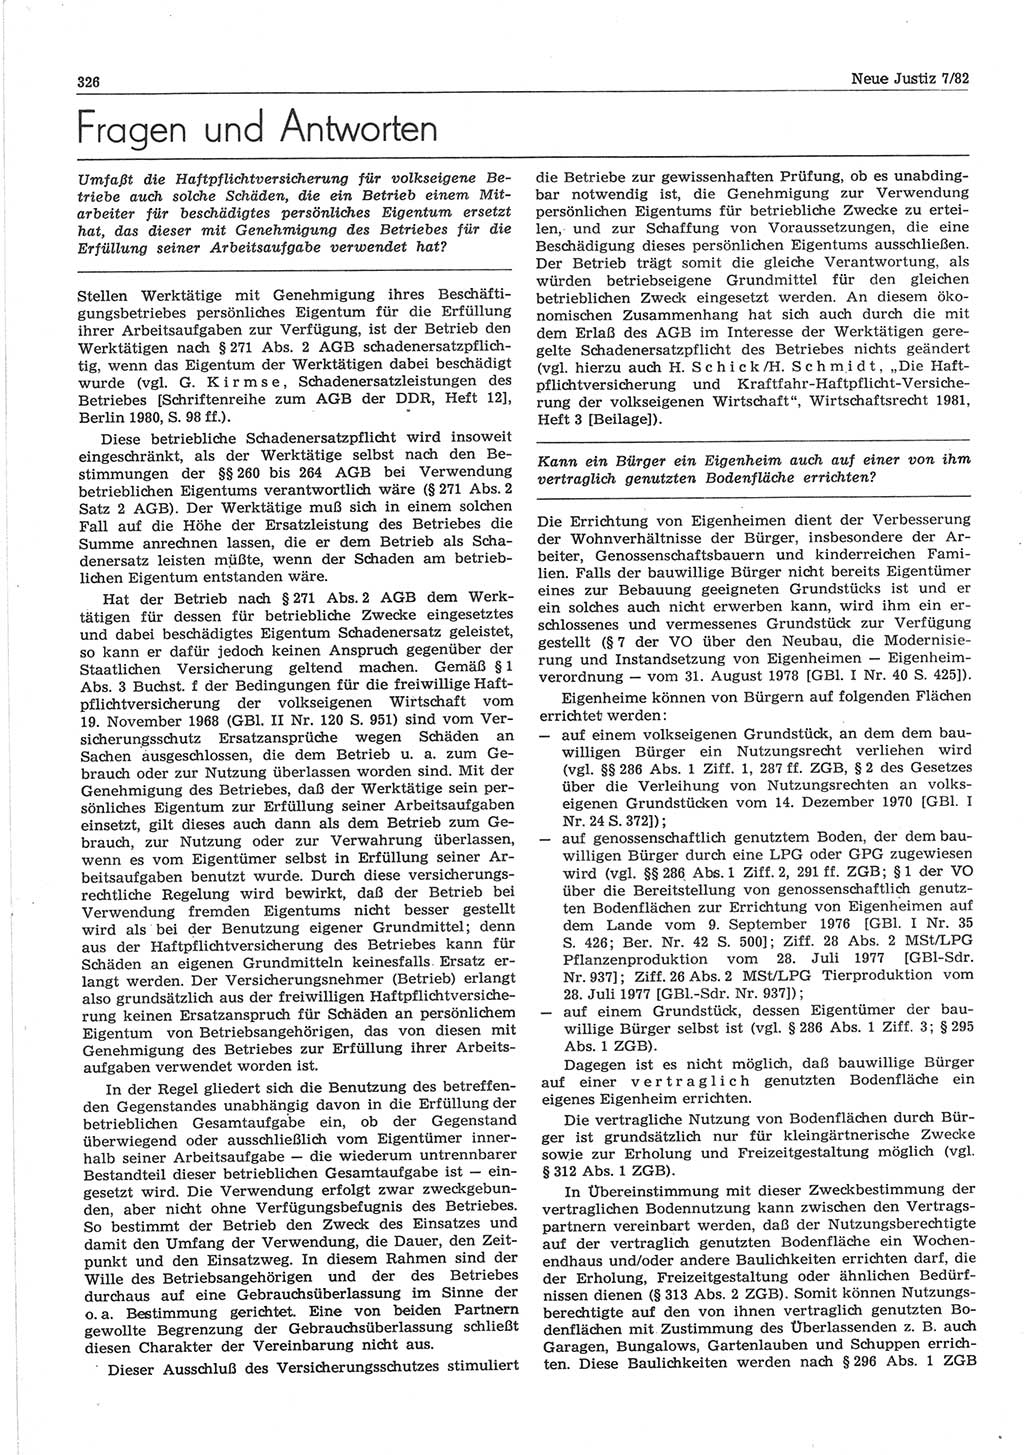 Neue Justiz (NJ), Zeitschrift für sozialistisches Recht und Gesetzlichkeit [Deutsche Demokratische Republik (DDR)], 36. Jahrgang 1982, Seite 326 (NJ DDR 1982, S. 326)